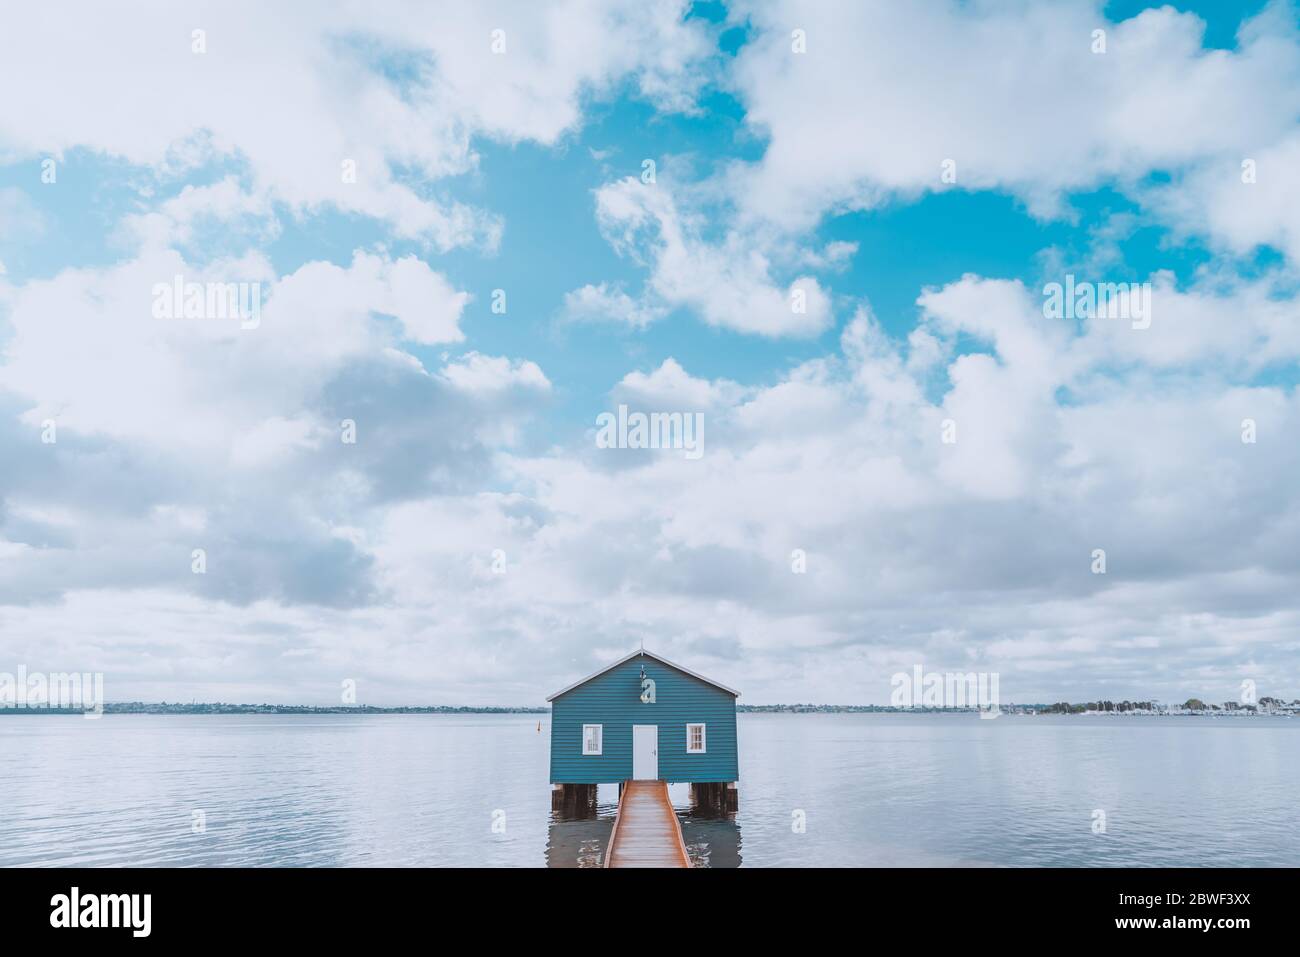 Perth, novembre 2019 : célèbre petite maison de bateau bleu - le hangar de Crawley Edge situé sur la Swan River à Crawley à Perth. Tourisme en Australie occidentale Banque D'Images